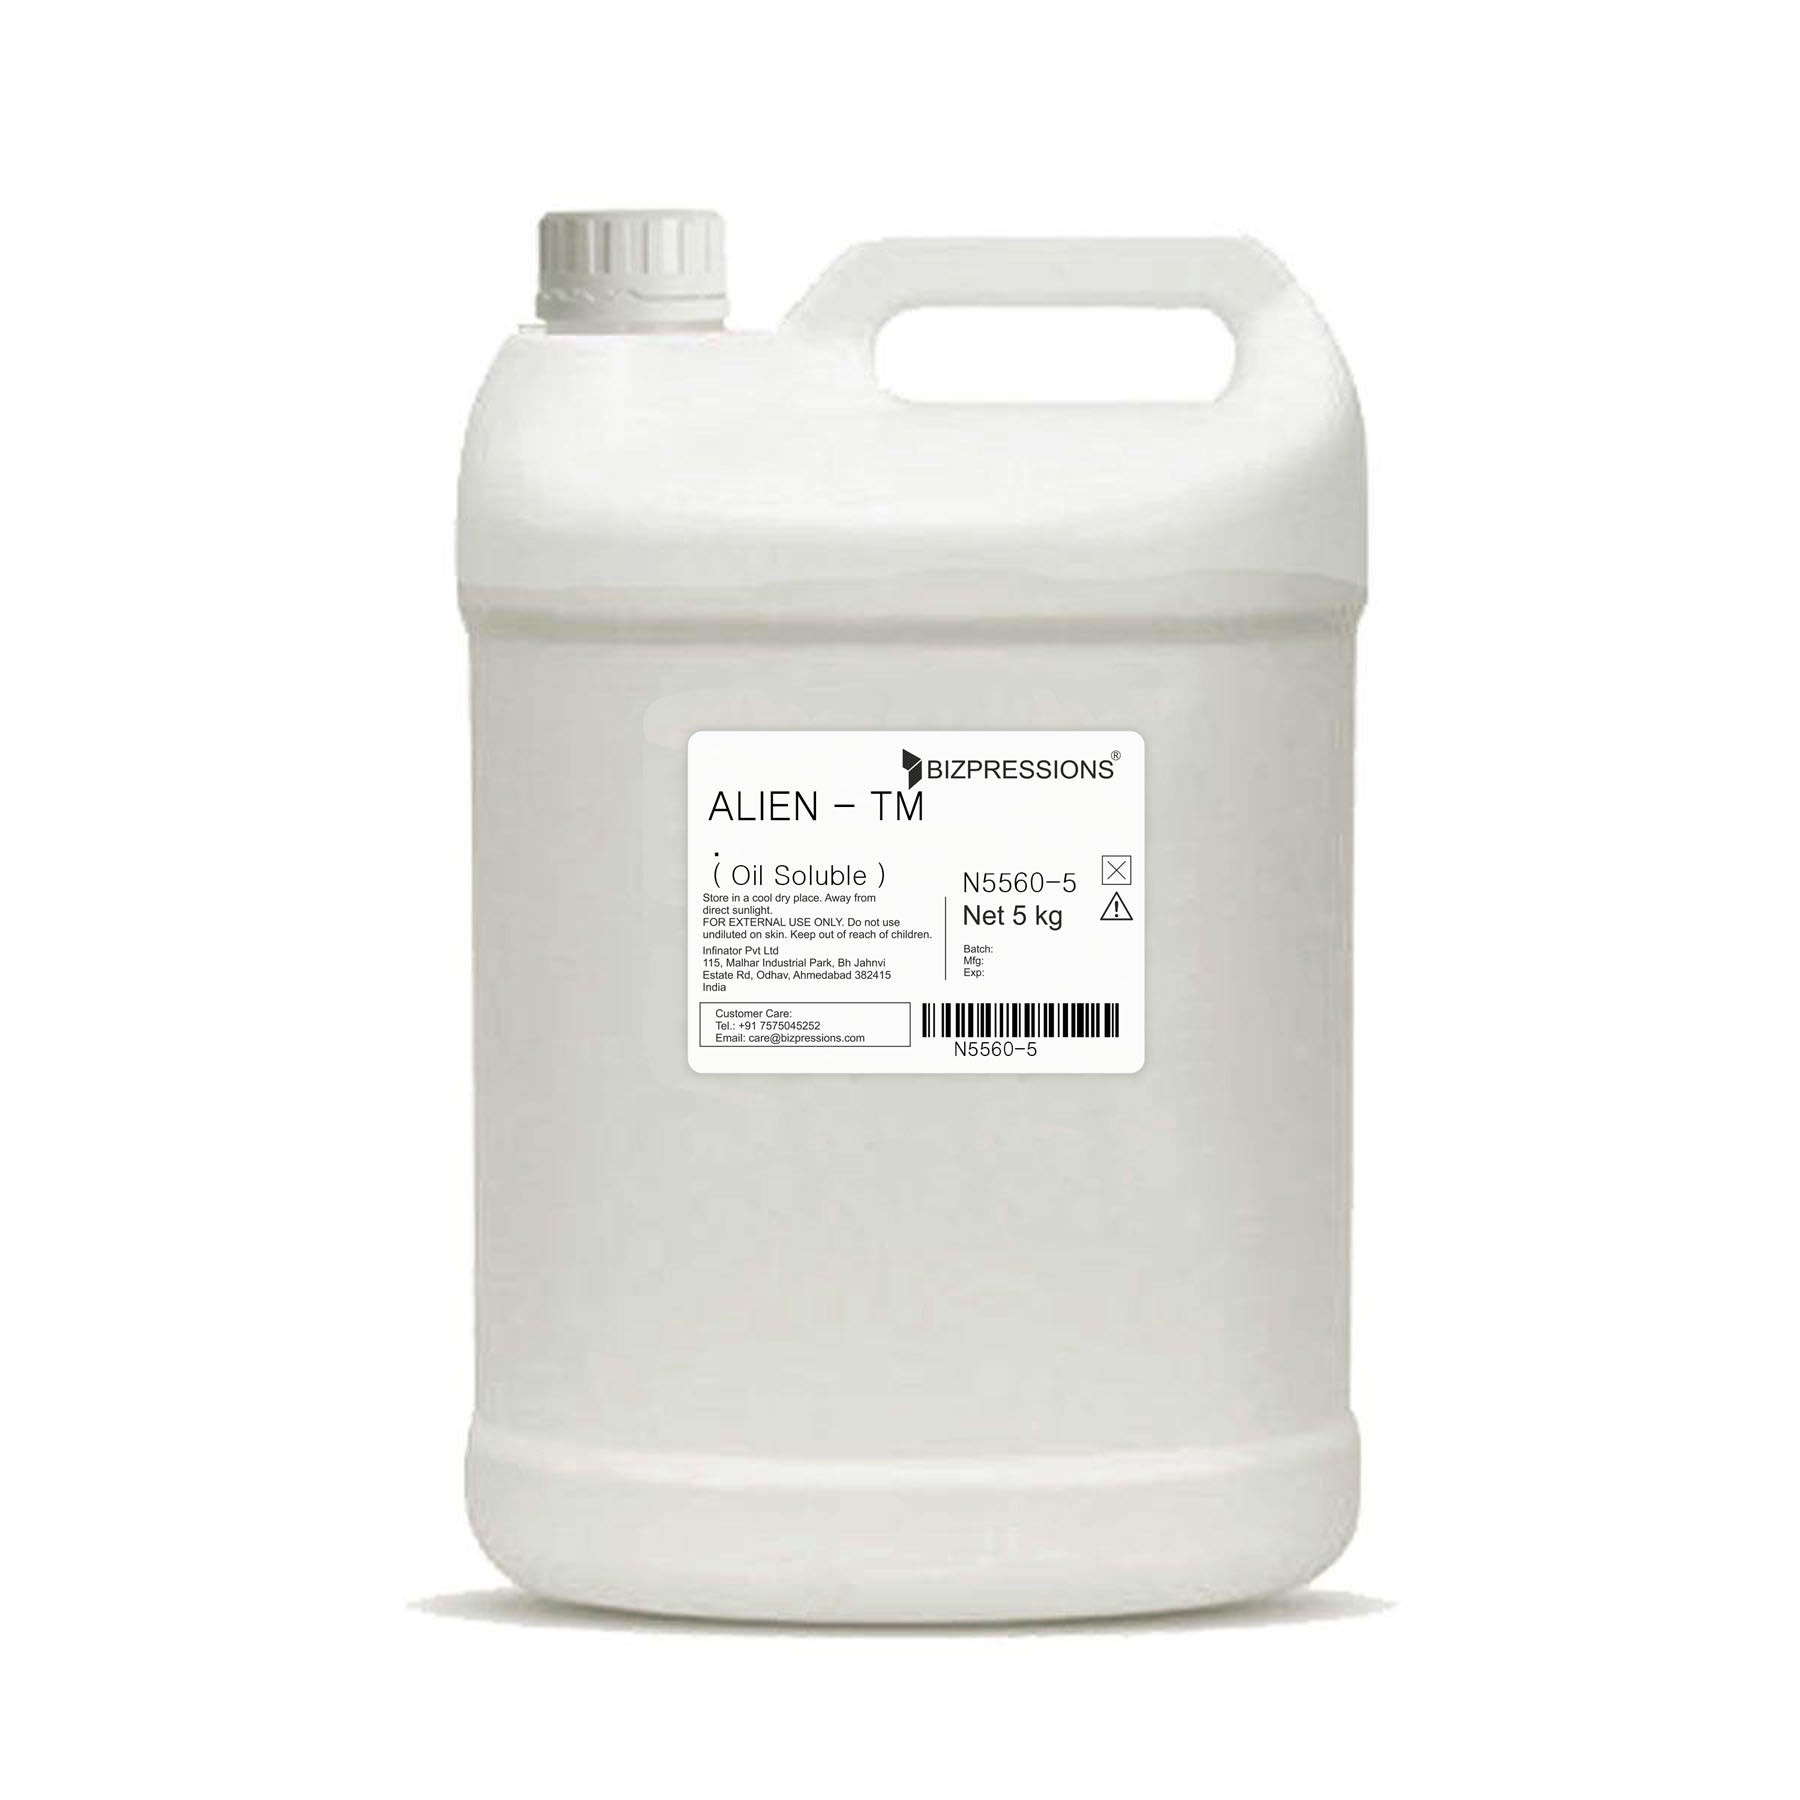 ALIEN - TM - Fragrance ( Oil Soluble ) - 5 kg